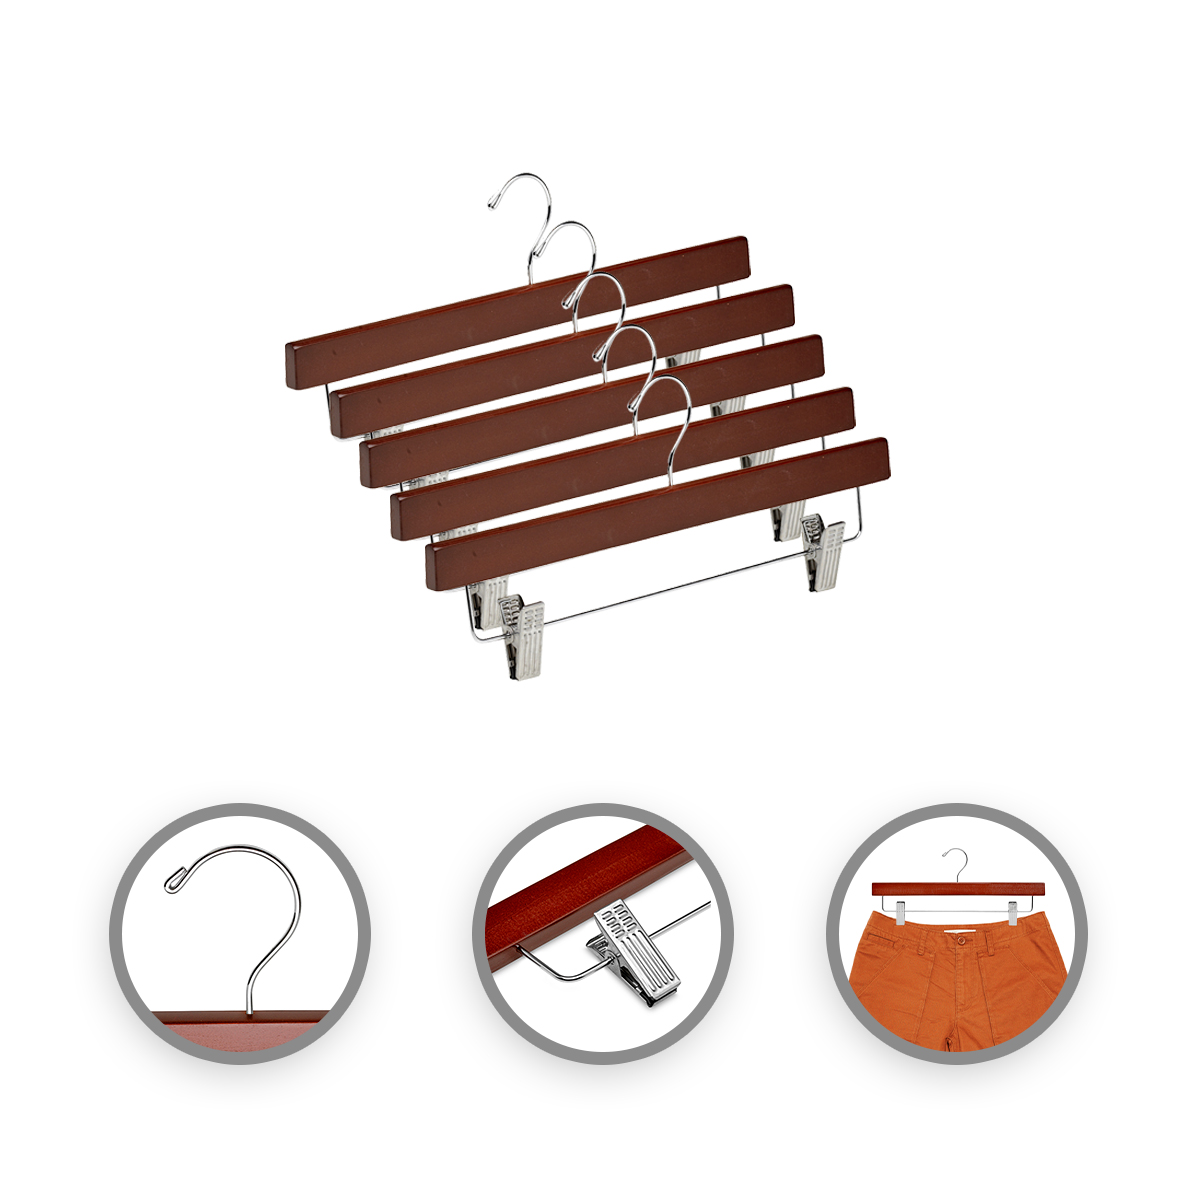 Tradineur - Pack de 3 perchas de madera con pinzas metálicas para  pantalones, perchas para ropa, faldas, ahorro de espacio, anti